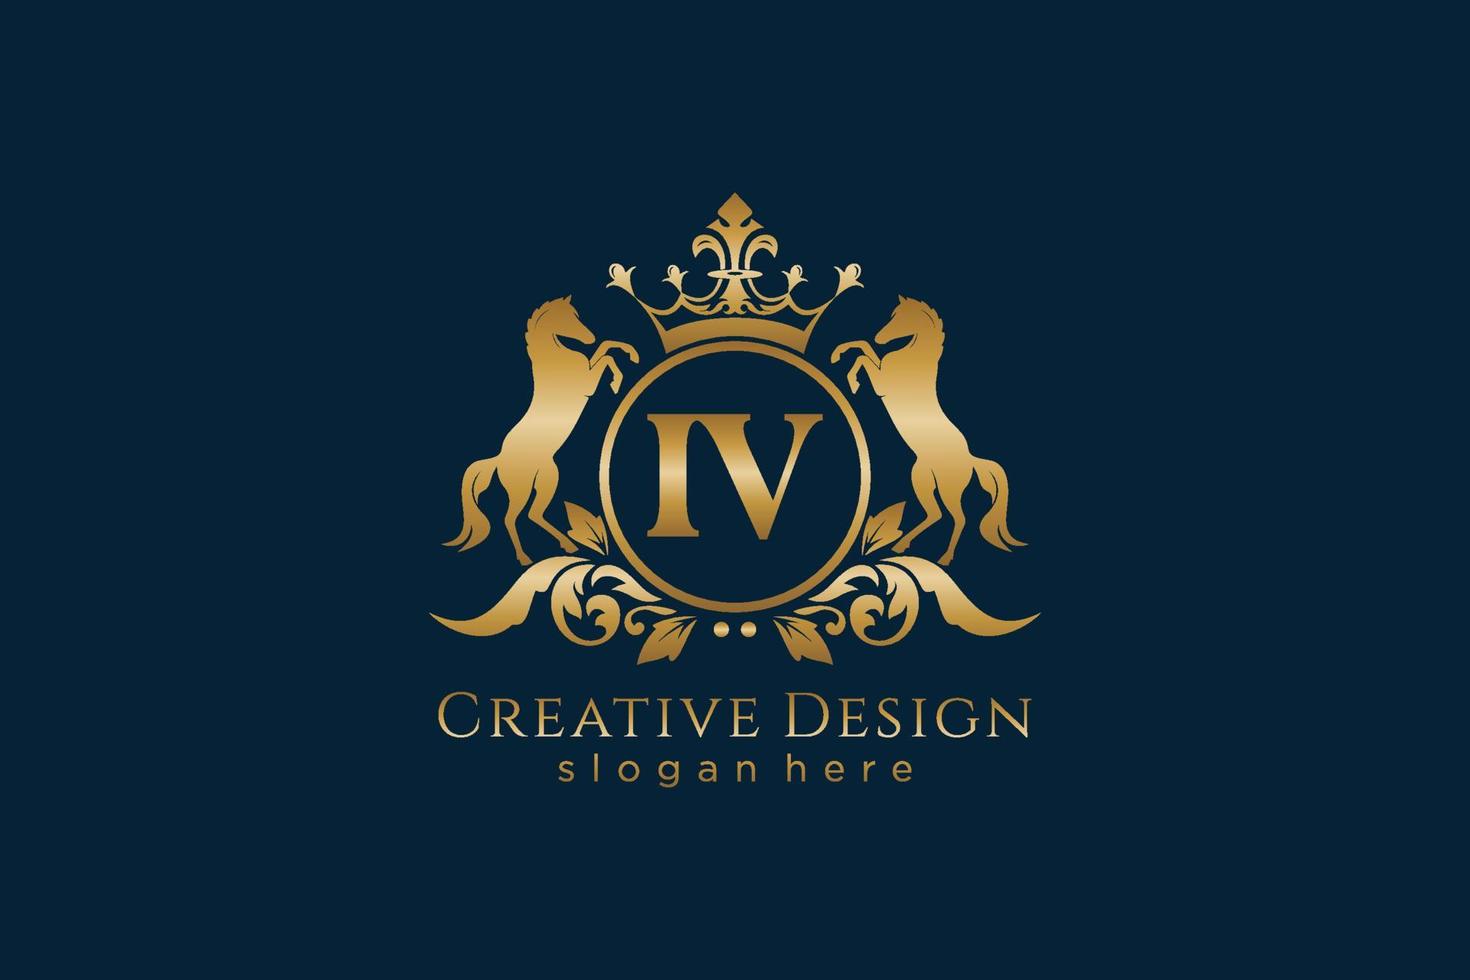 cresta dorada retro inicial iv con círculo y dos caballos, plantilla de insignia con pergaminos y corona real - perfecto para proyectos de marca de lujo vector